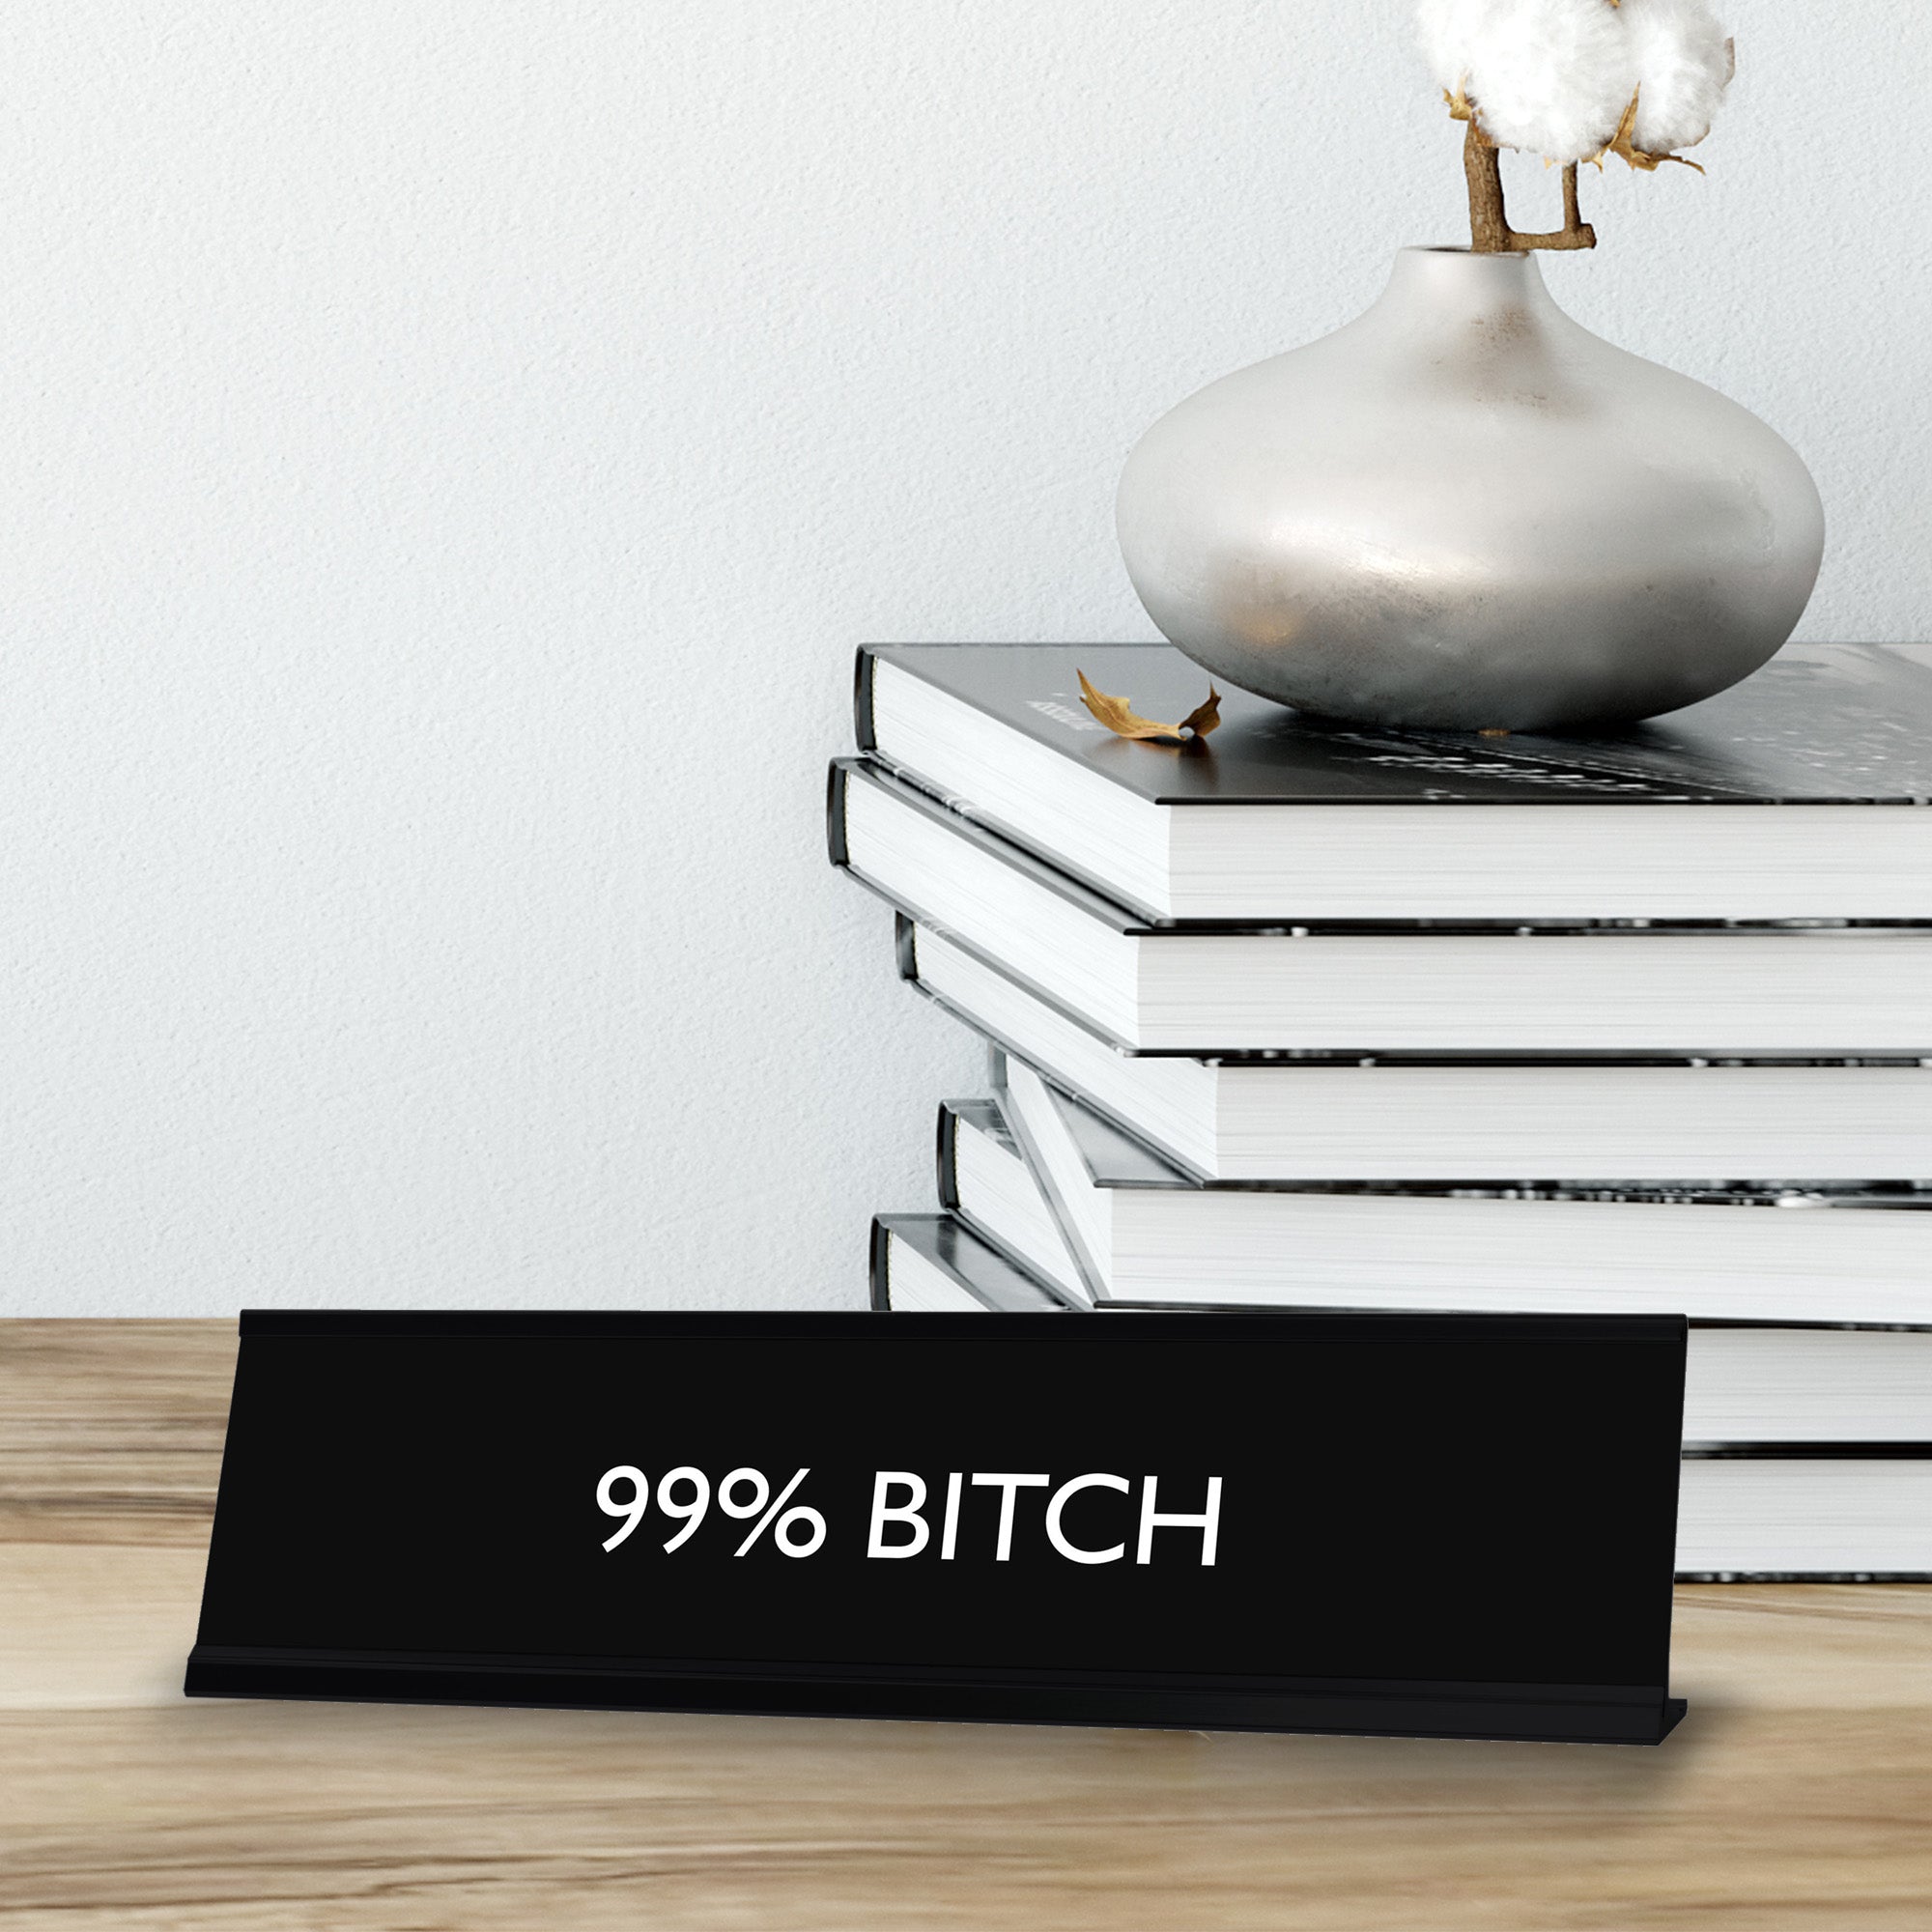 99% BITCH Novelty Desk Sign